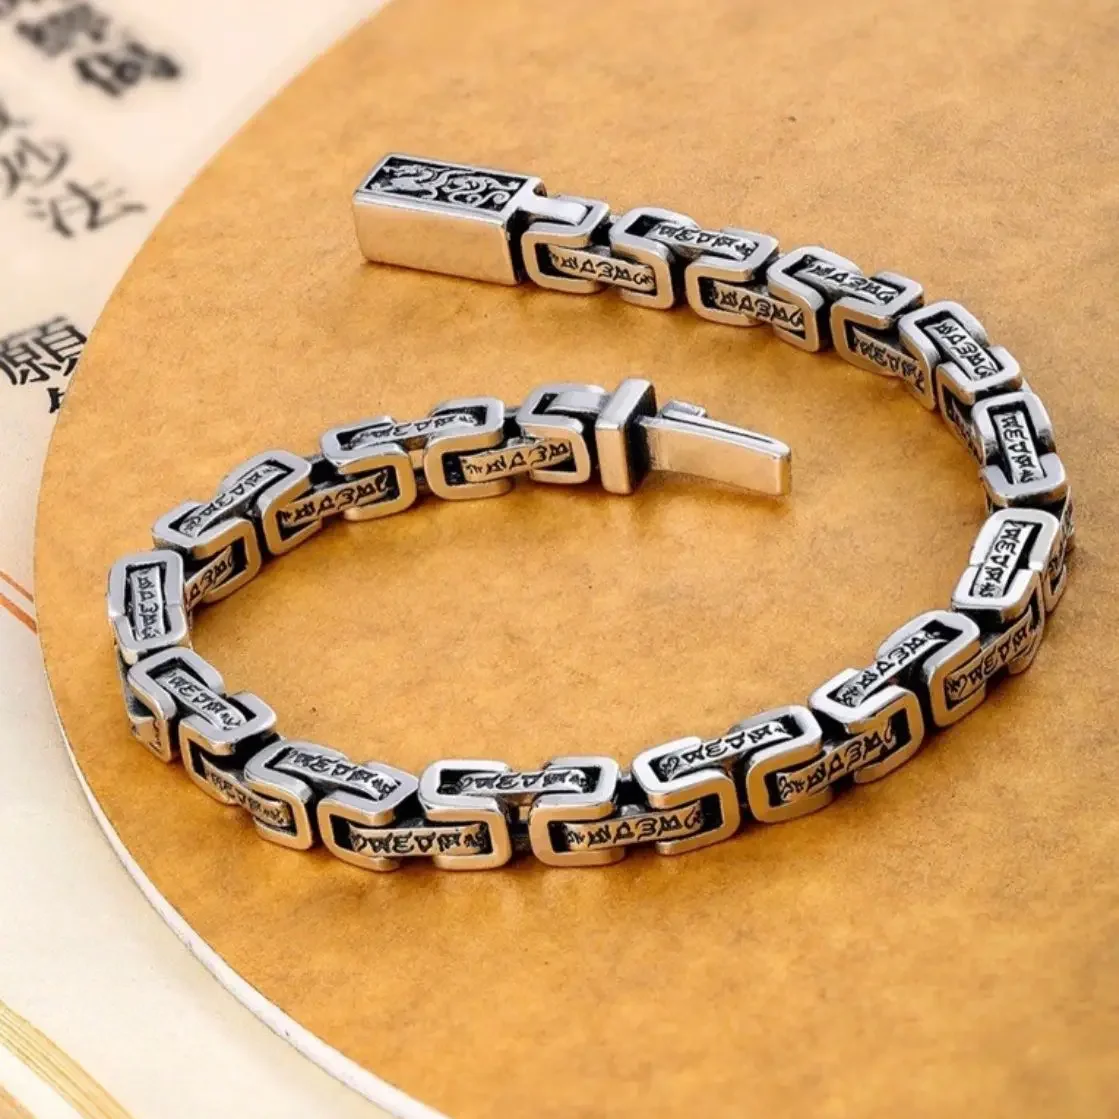 

Браслет в китайском стиле с изображением дракона мужской ретро-браслет с шестью истинными словами модный трендовый браслет в китайском стиле